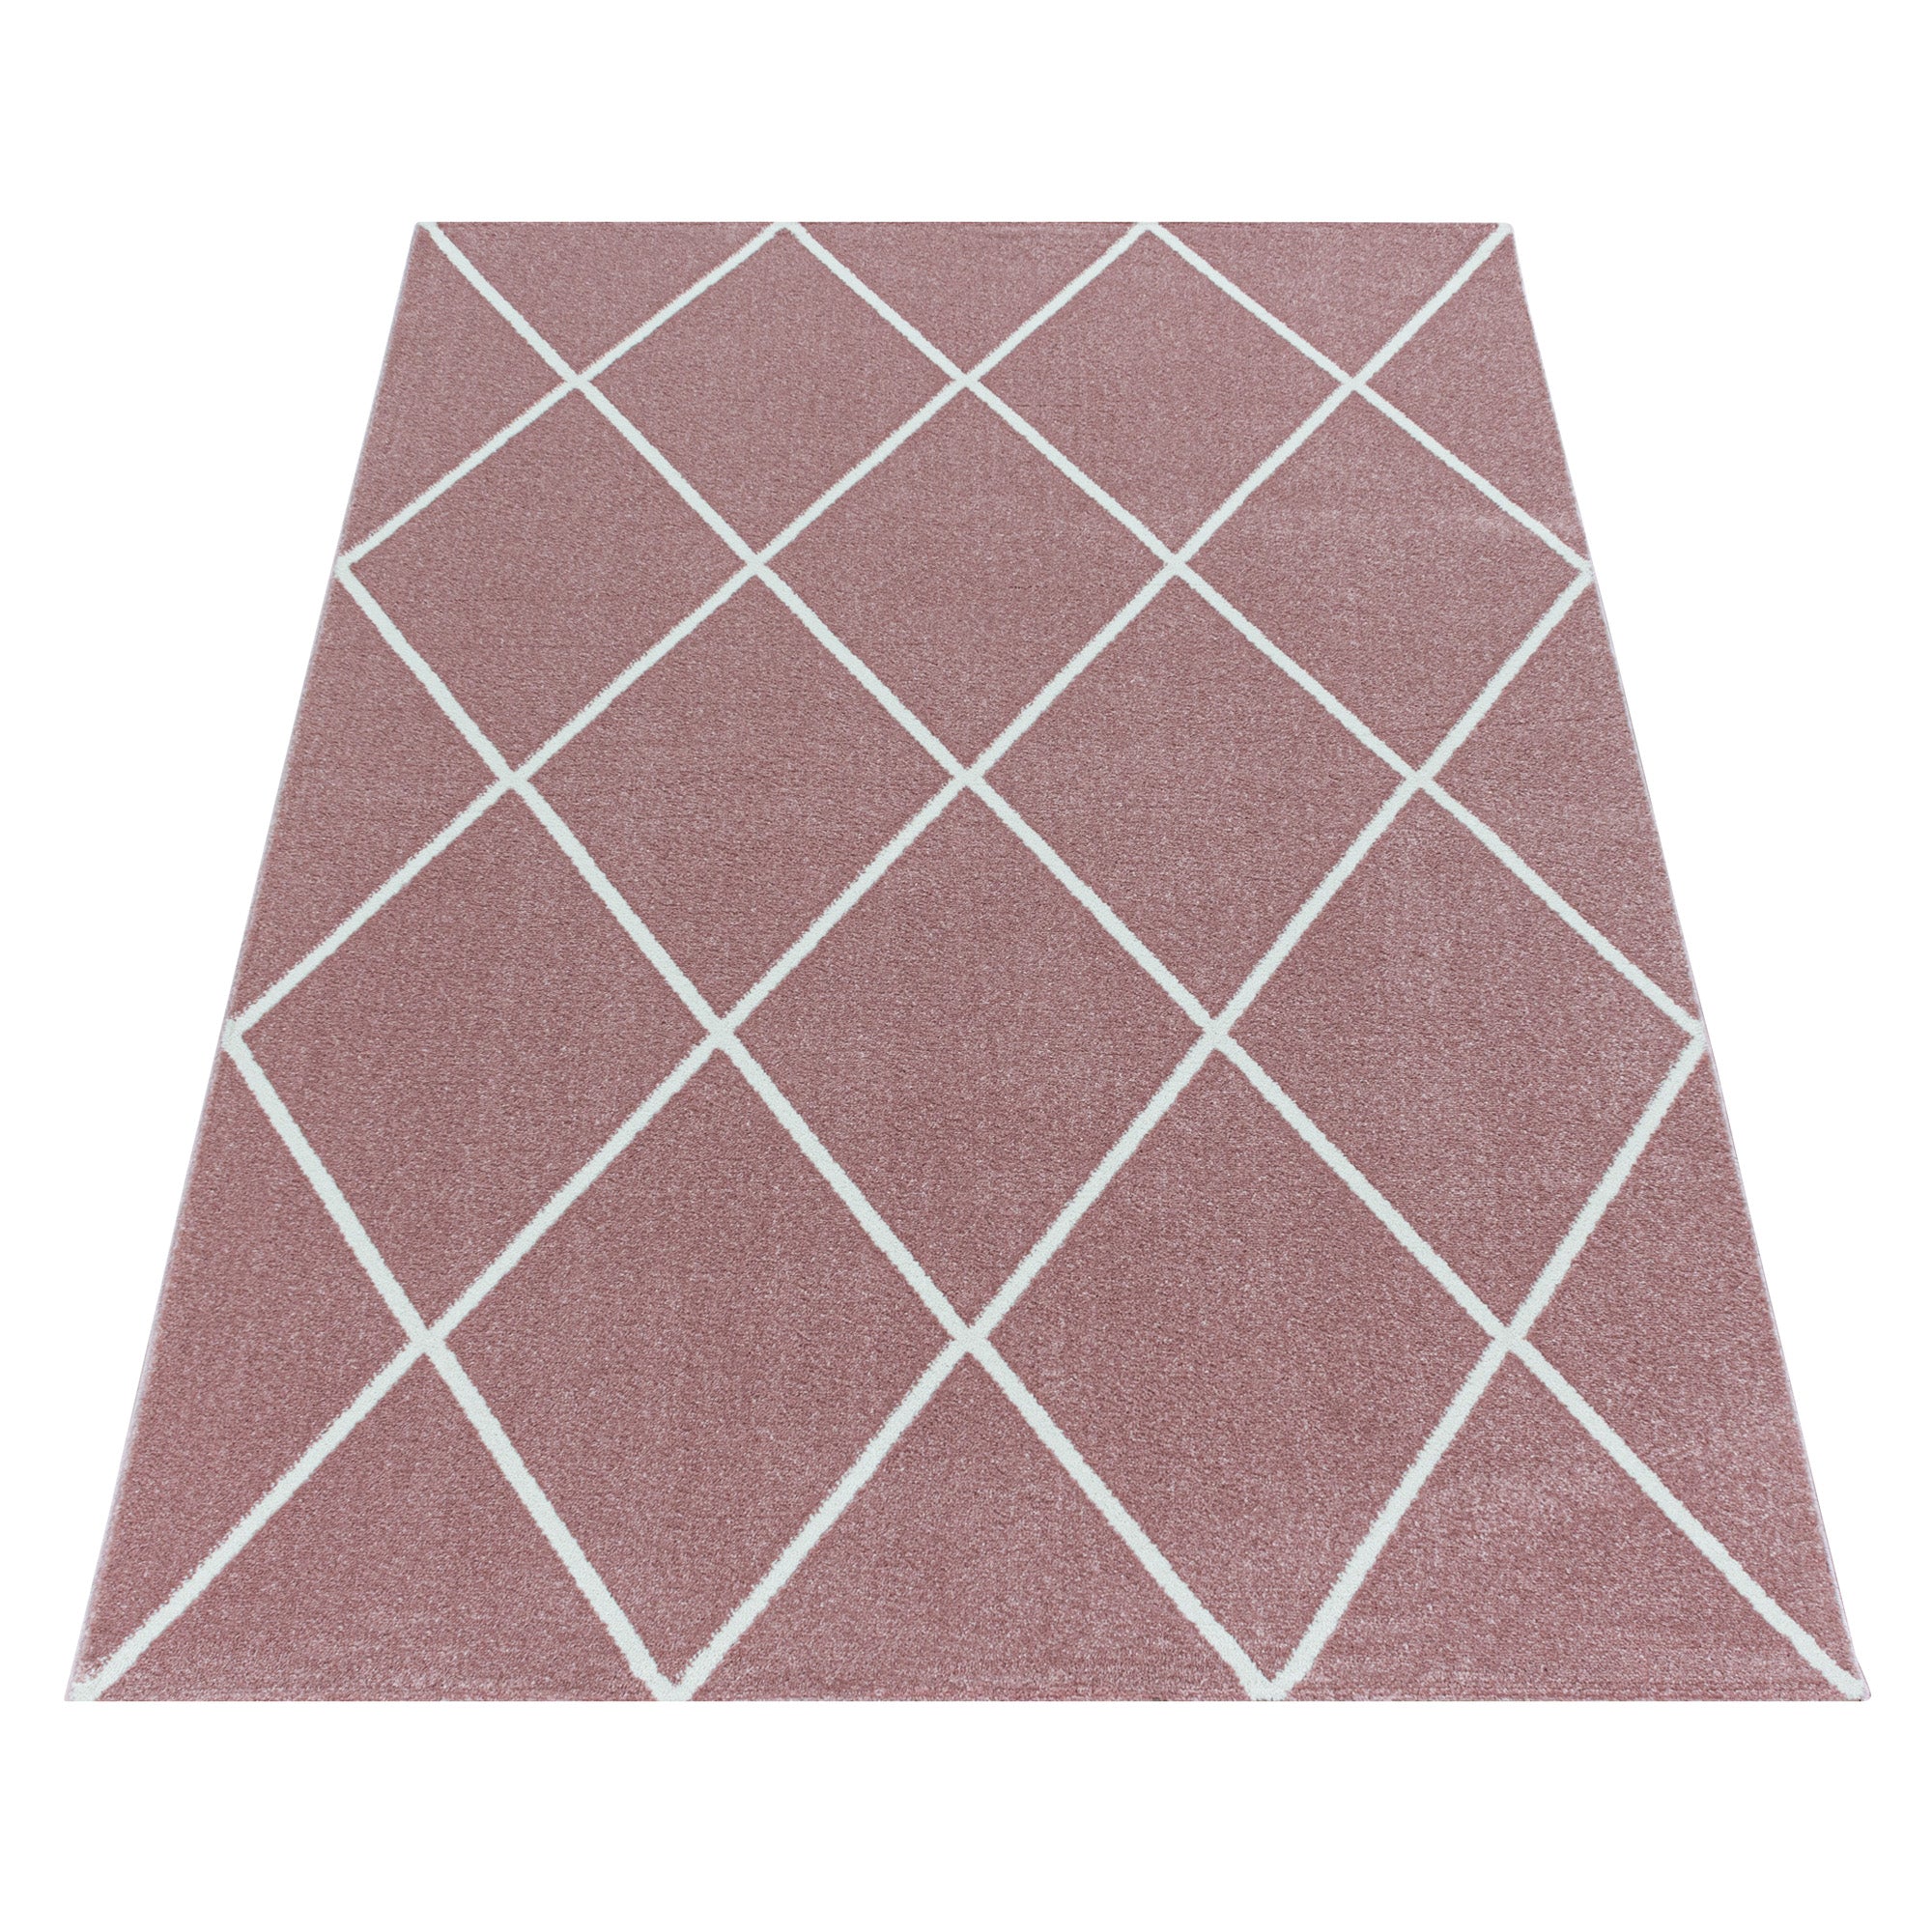 Kurzflor Teppich Rosa Design Raute Modern Linien Wohnzimmerteppich Unifarben